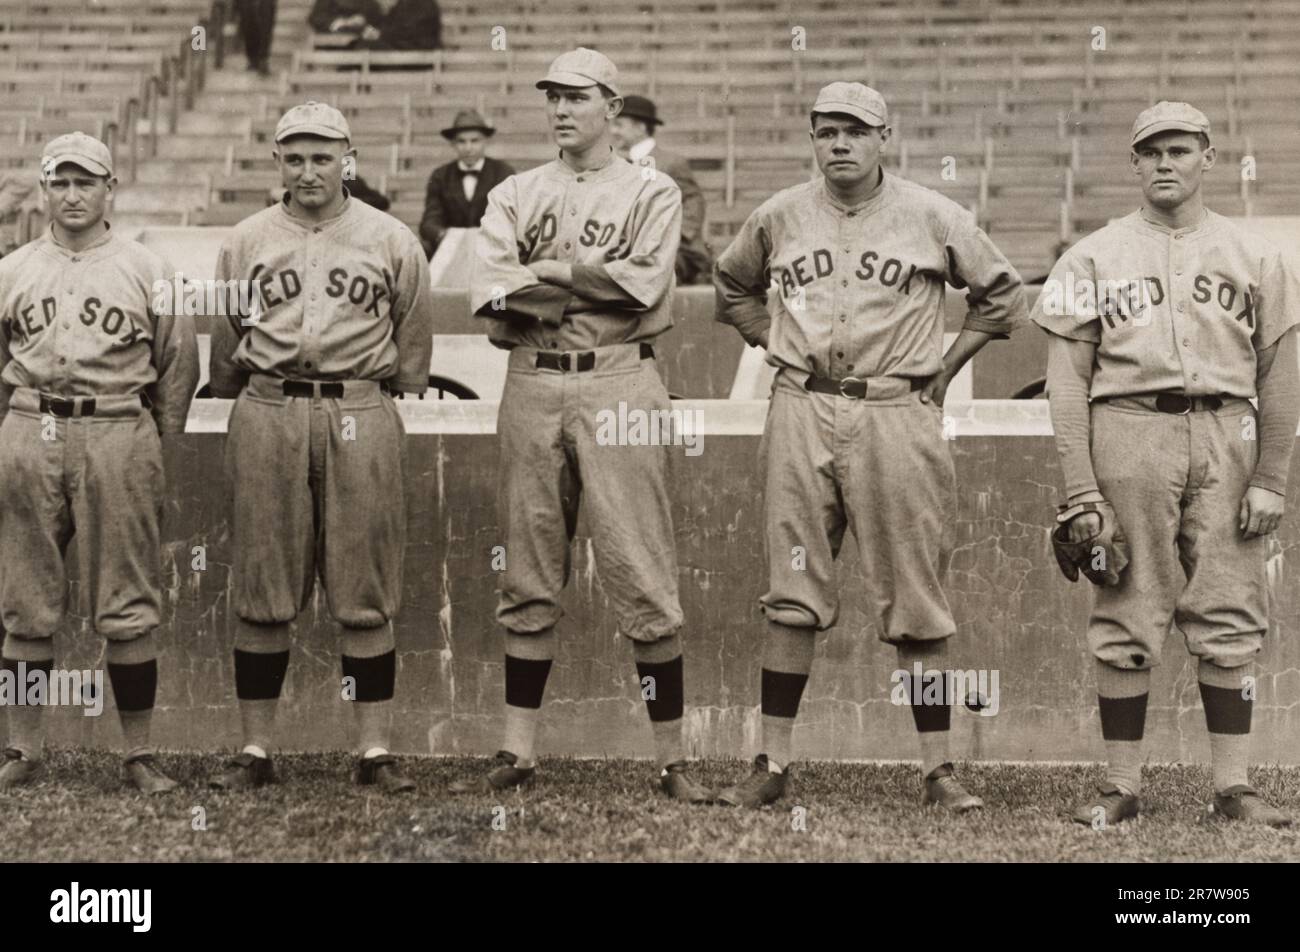 Babe Ruth et autres pichets Red Sox 1915 Banque D'Images